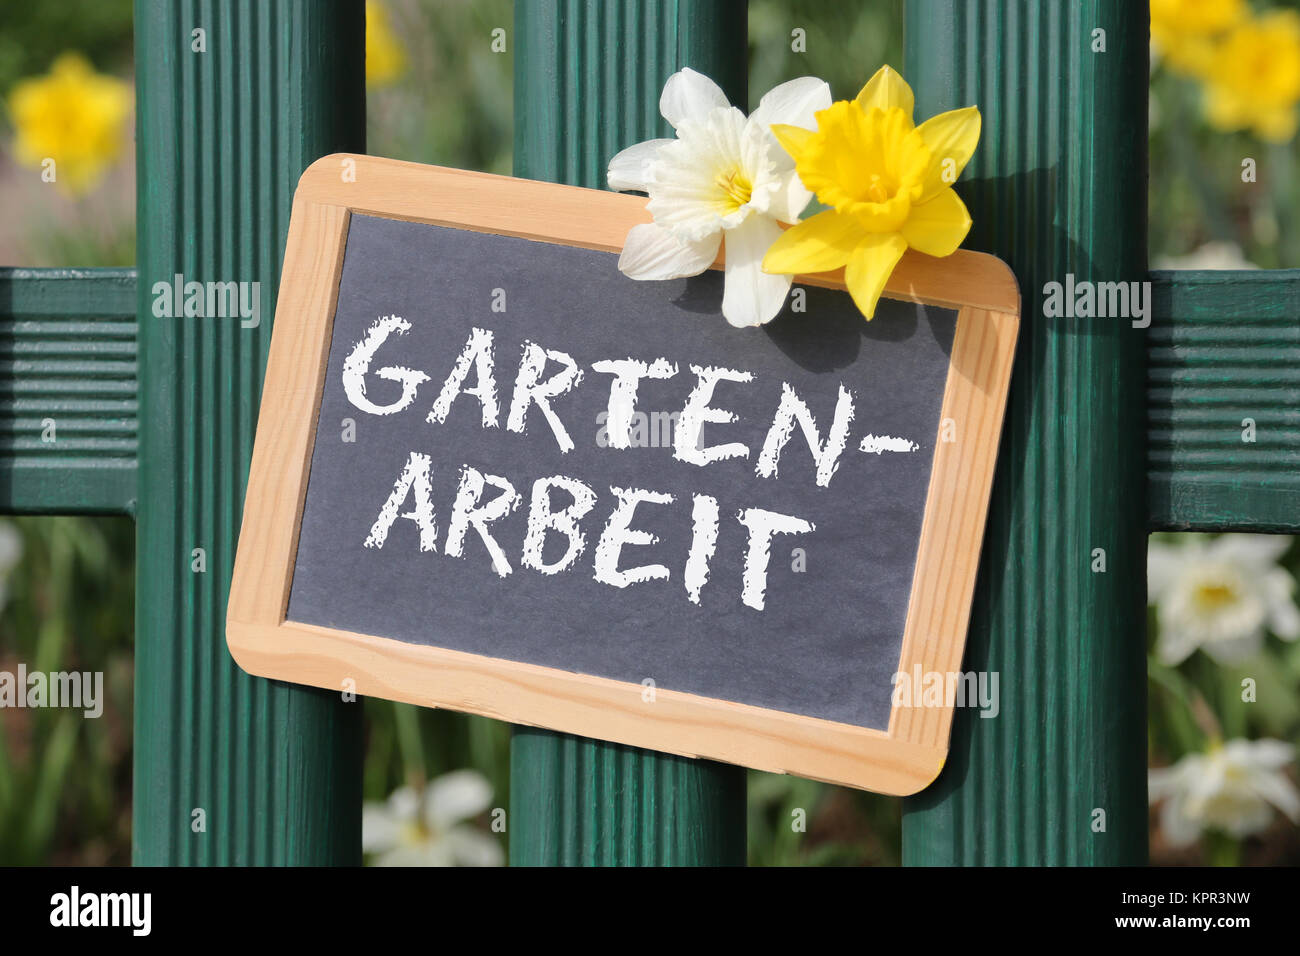 Gartenarbeit Arbeit arbeiten im Garten mit Blumen Blume im Frühling Tafel Schild auf Zaun Foto Stock